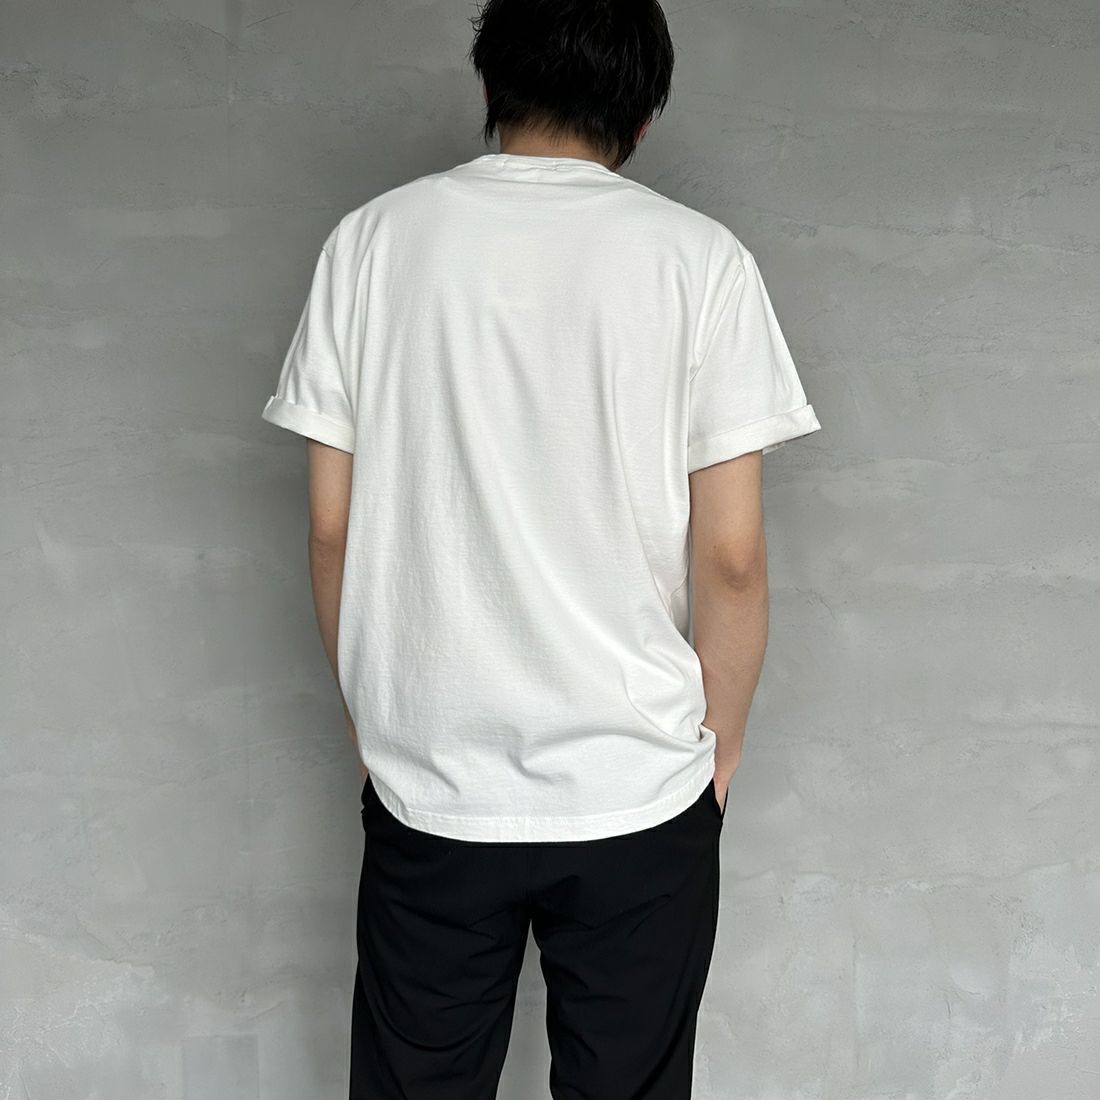 Gymphlex [ジムフレックス] ロールアップスリーブ ロゴ刺繍Tシャツ [J-1155CH] WHITE &&モデル身長：173cm 着用サイズ：L&&